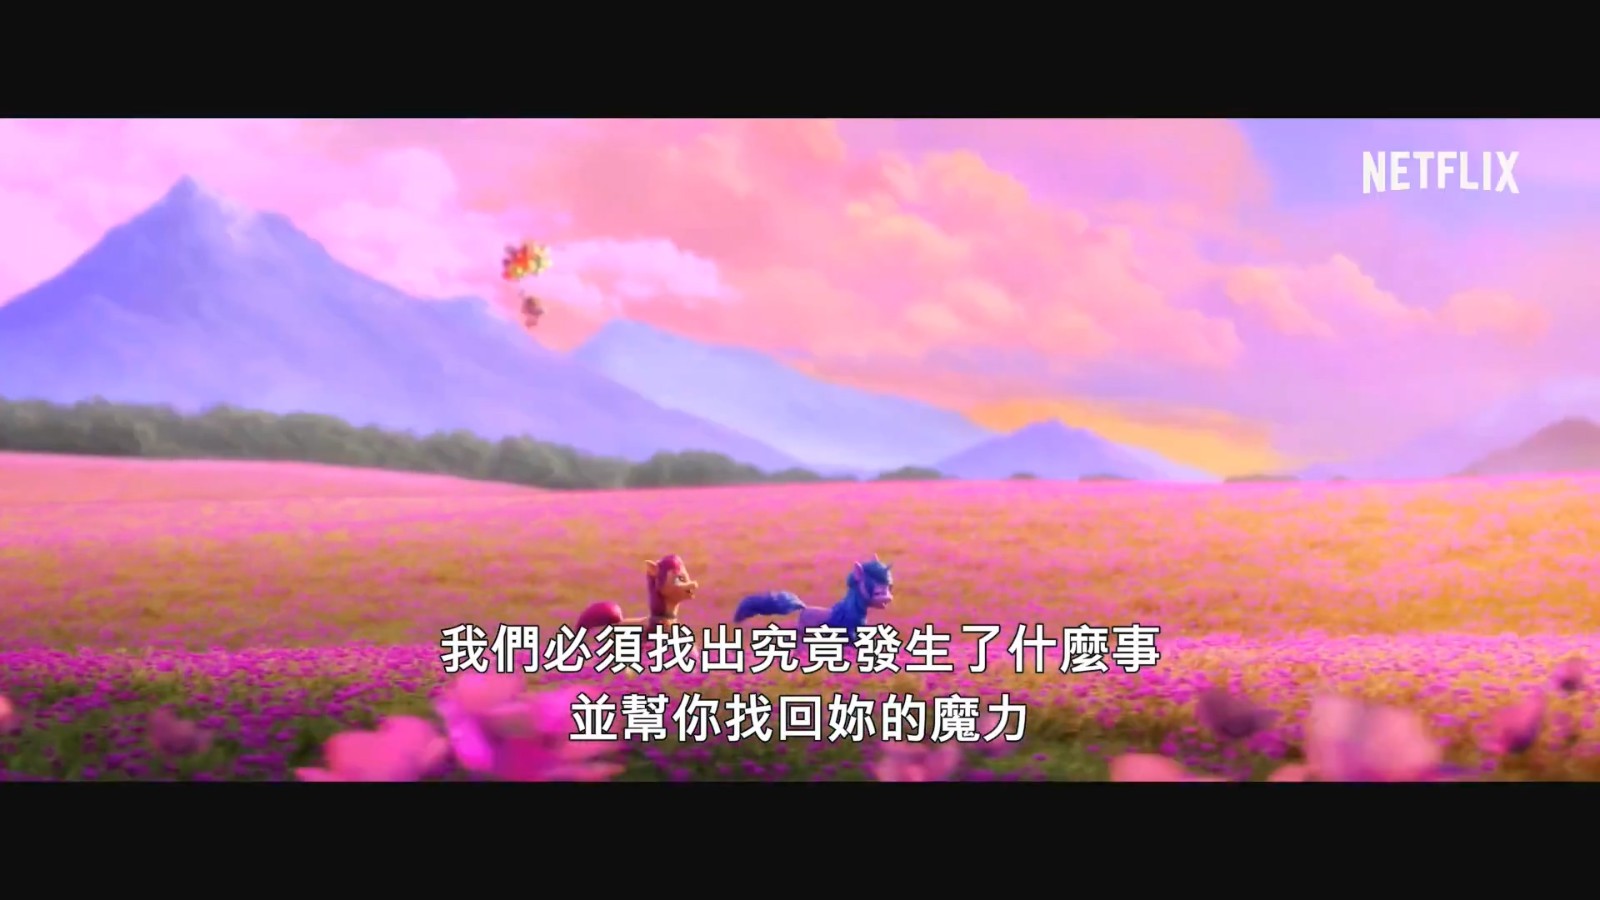 网飞原创《小马宝莉：新时代》中字预告 9月14日播映